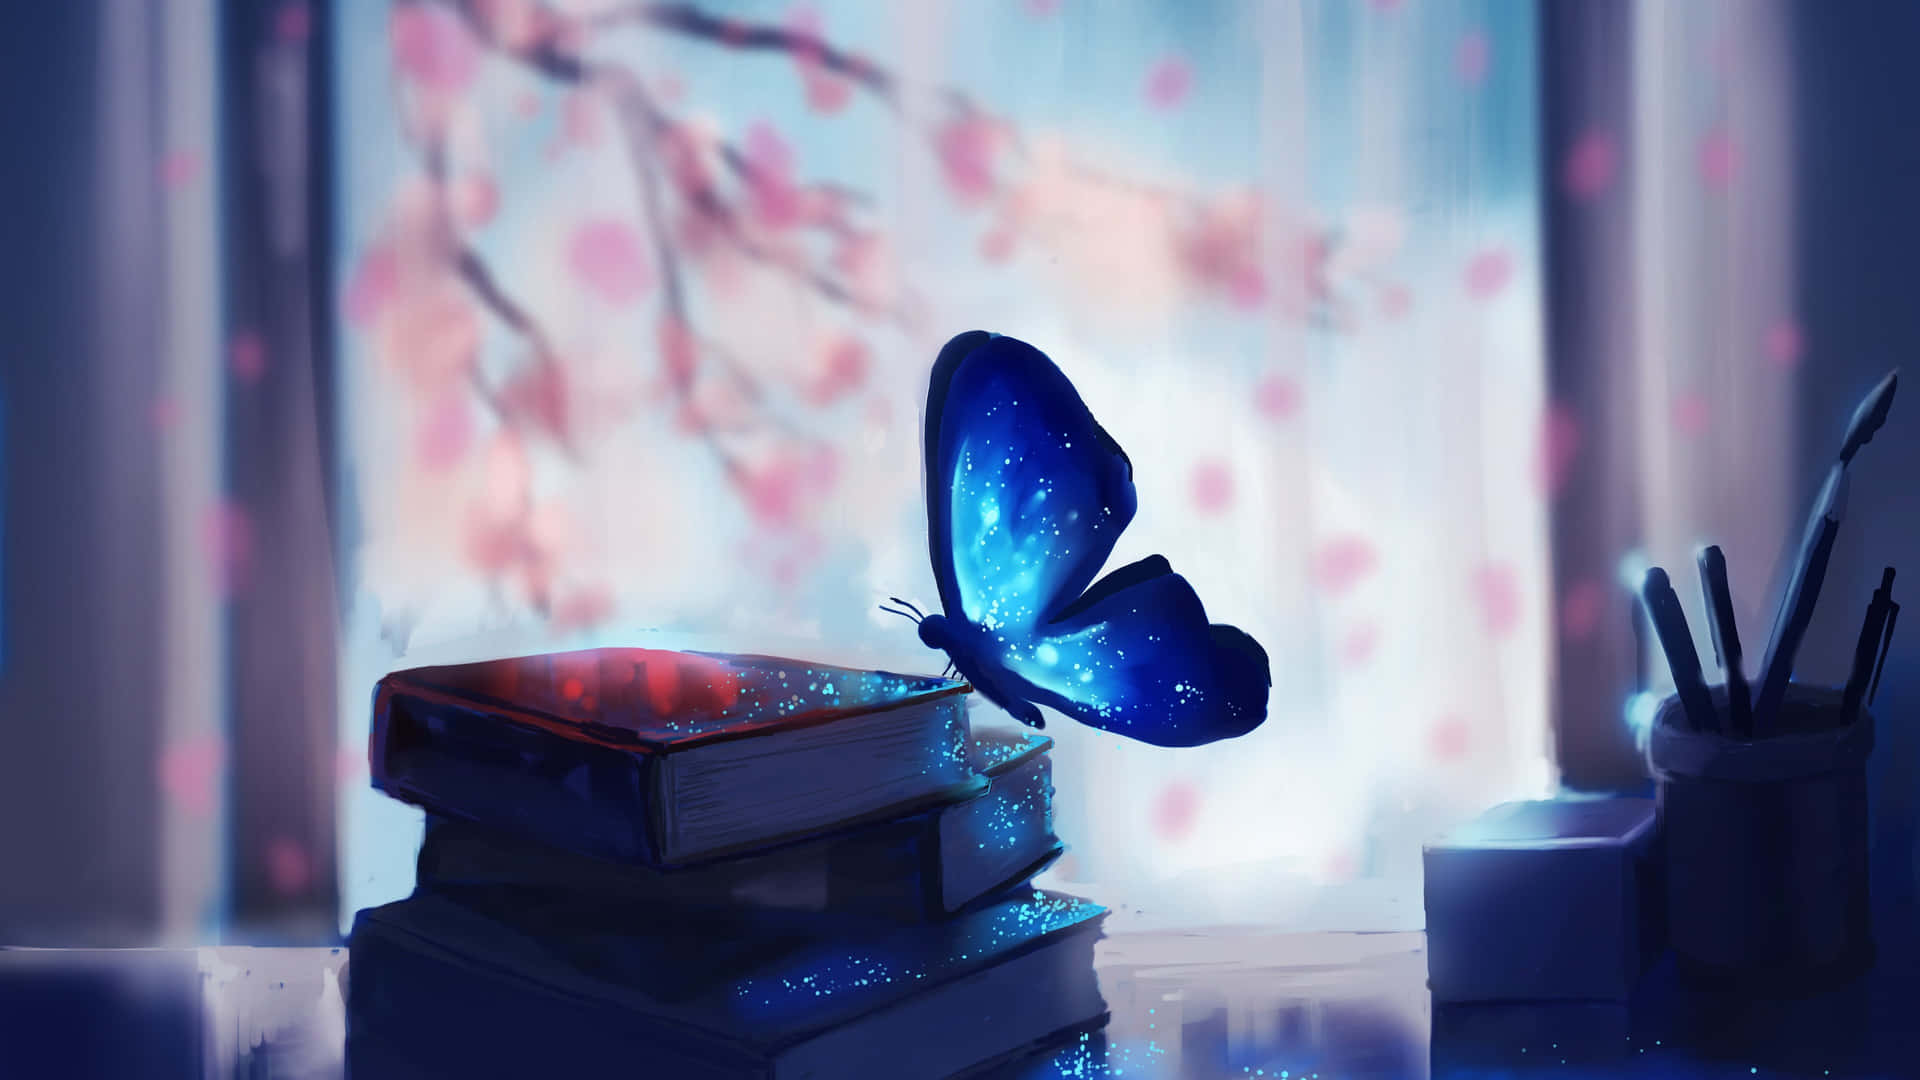 Magical Butterflies - A Stunning Artwork Wallpaper